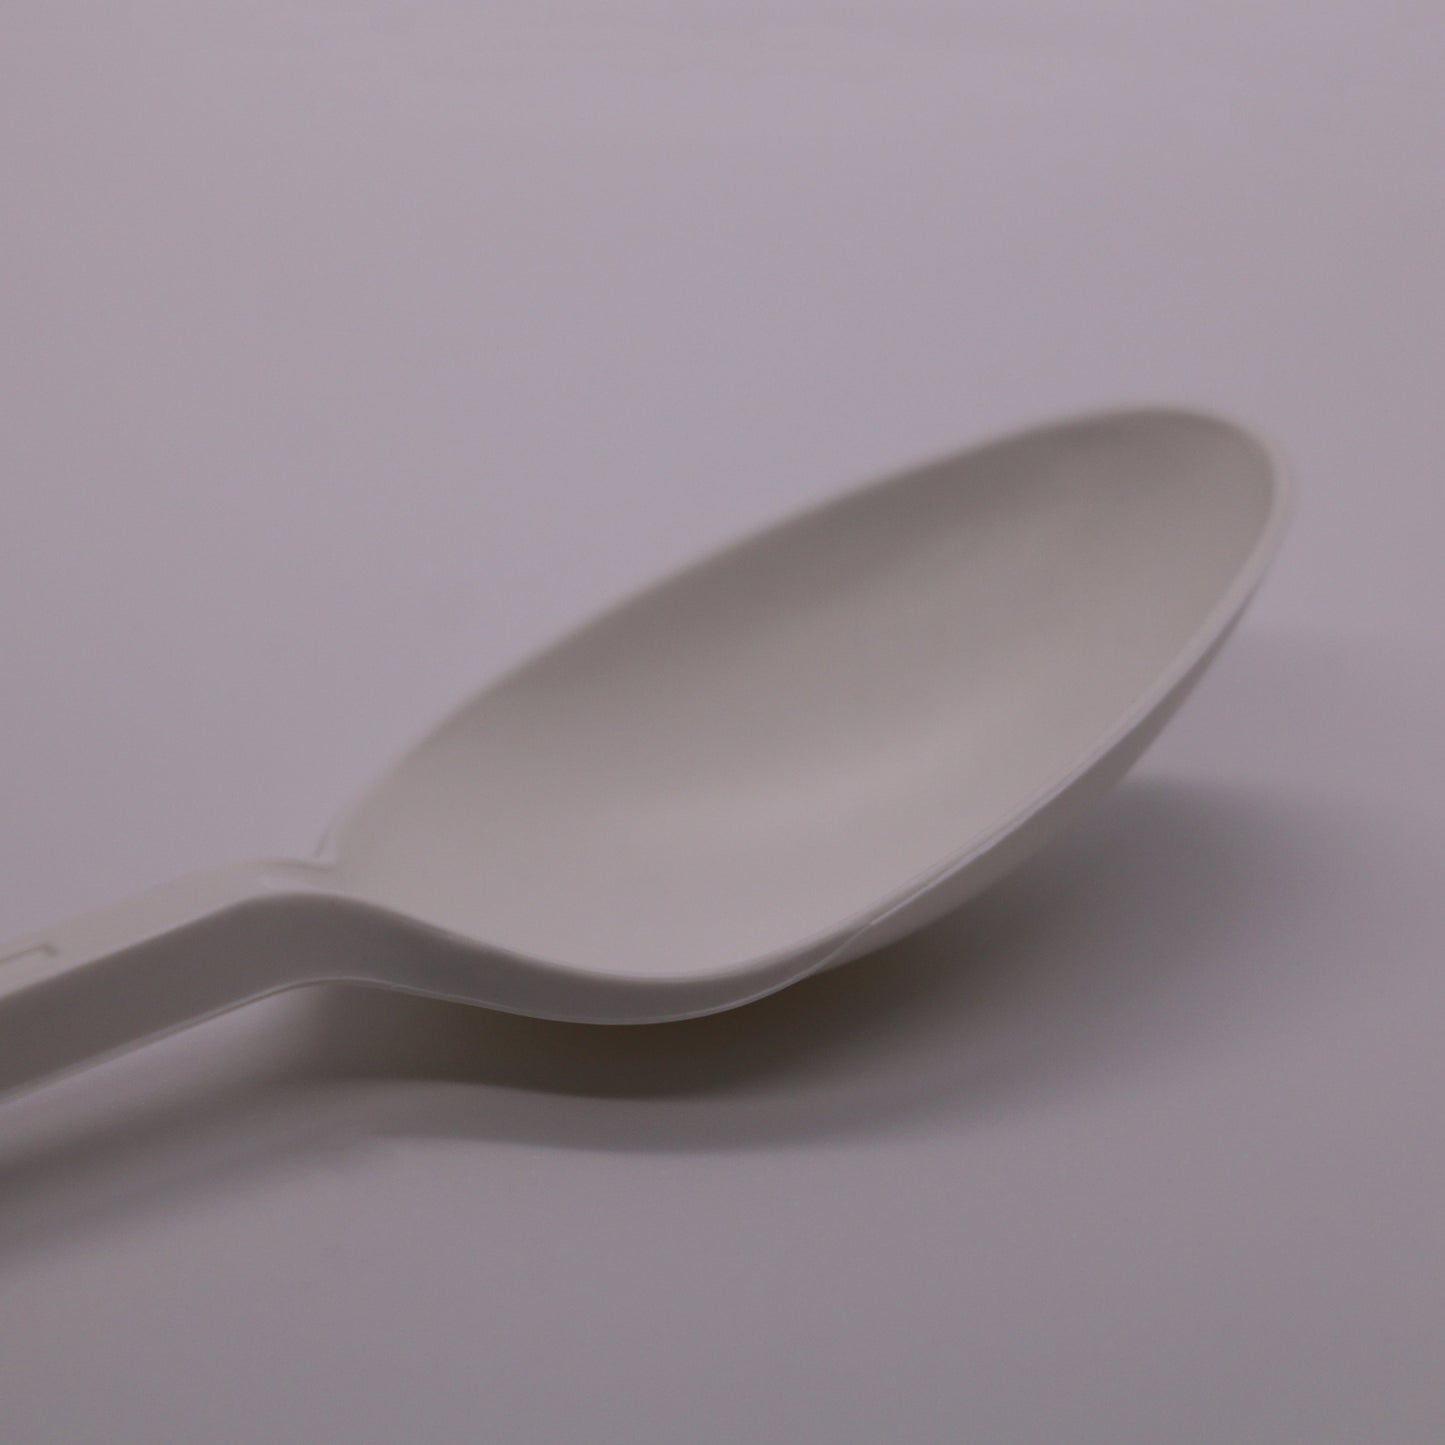 Premium Biodegradable Spoons [Pack of 25]